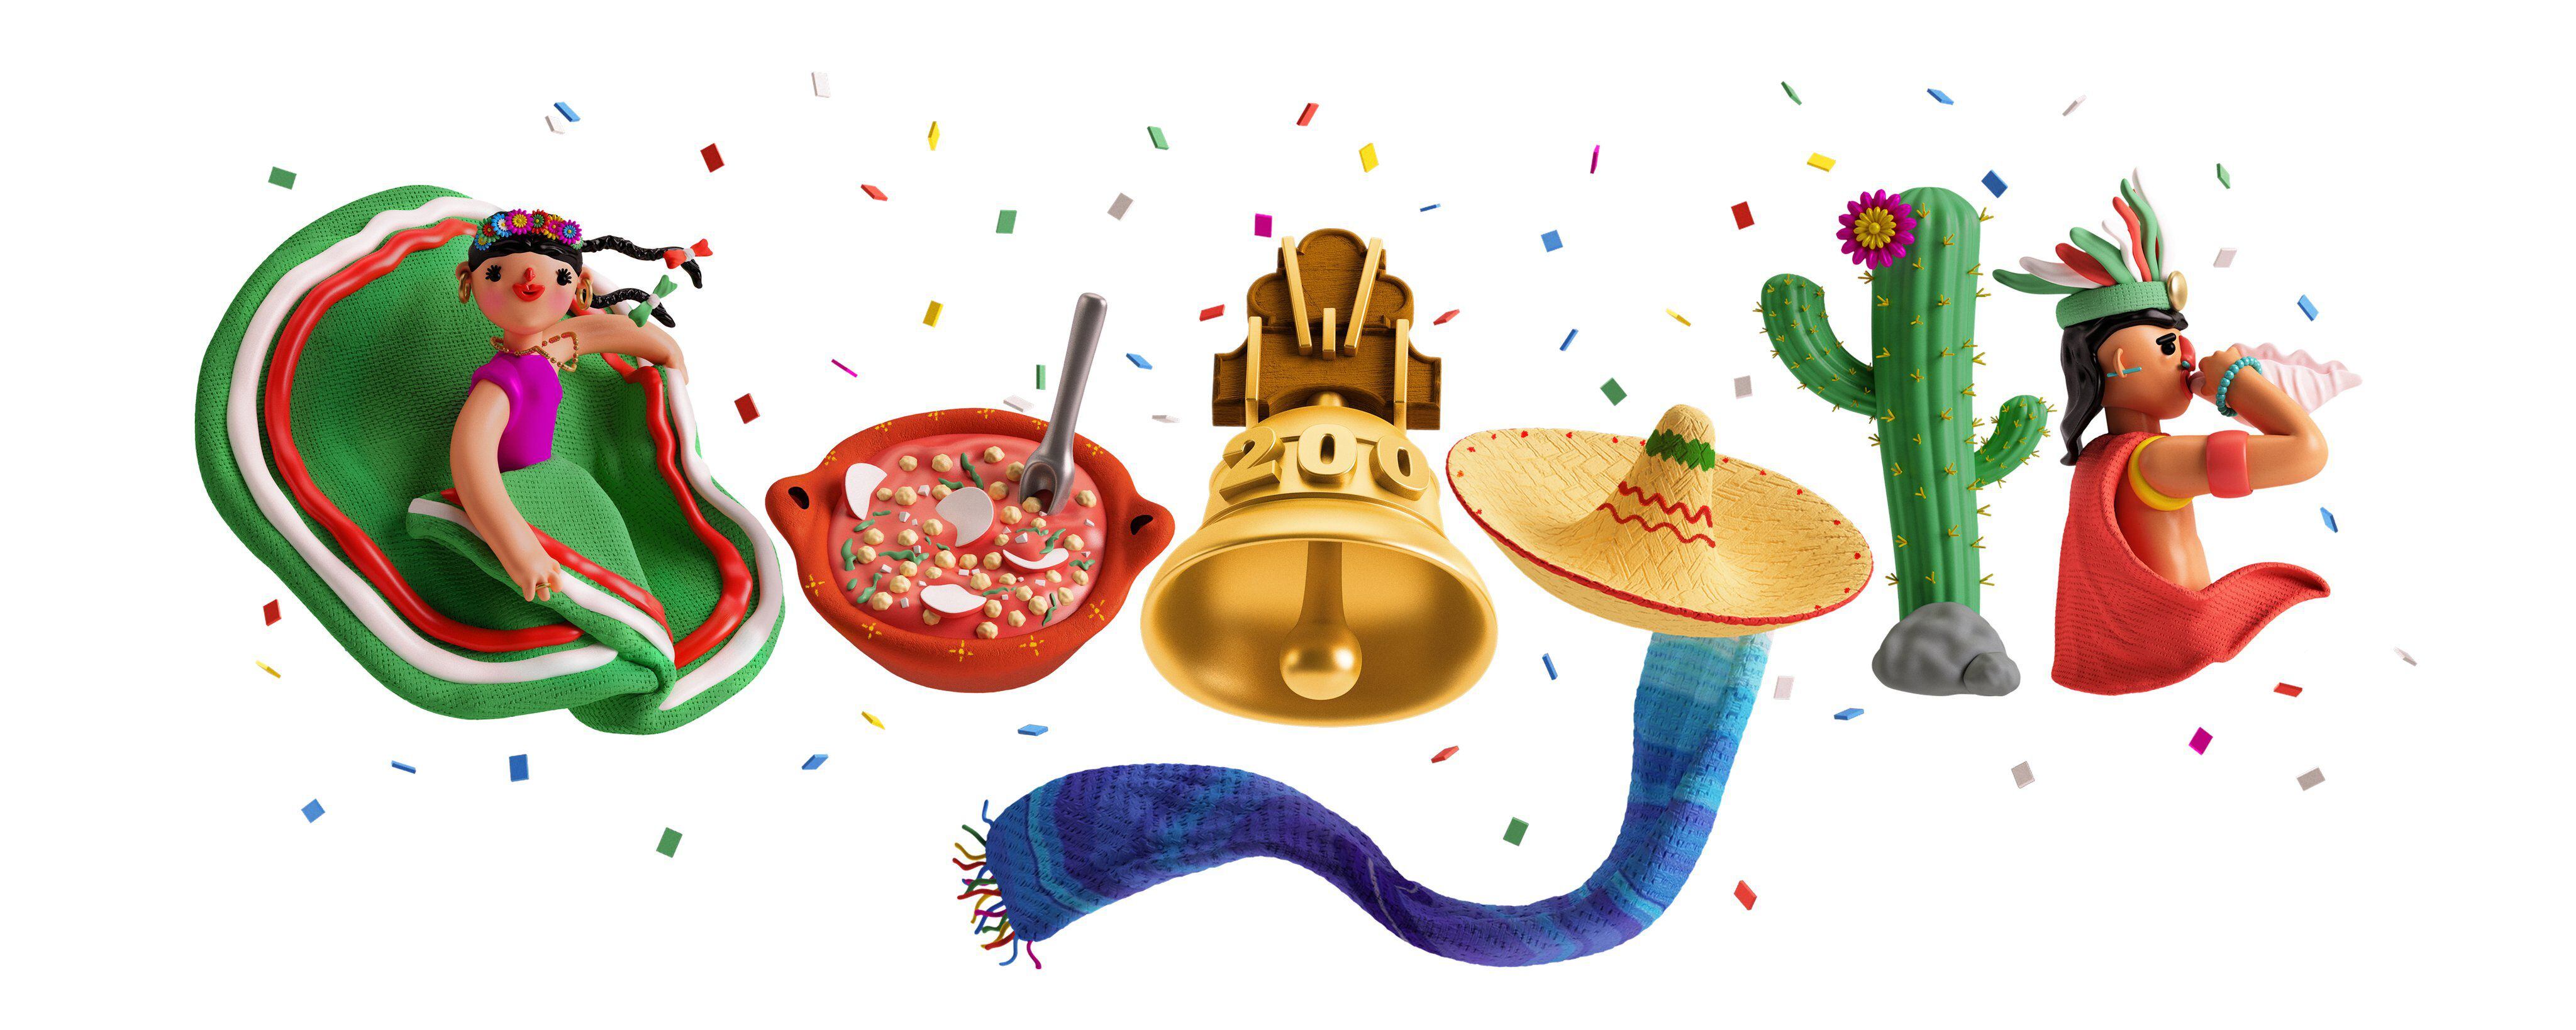 ¡Google da el grito! Pozole, bailable y campanas para celebrar 200 años de la Independencia de México